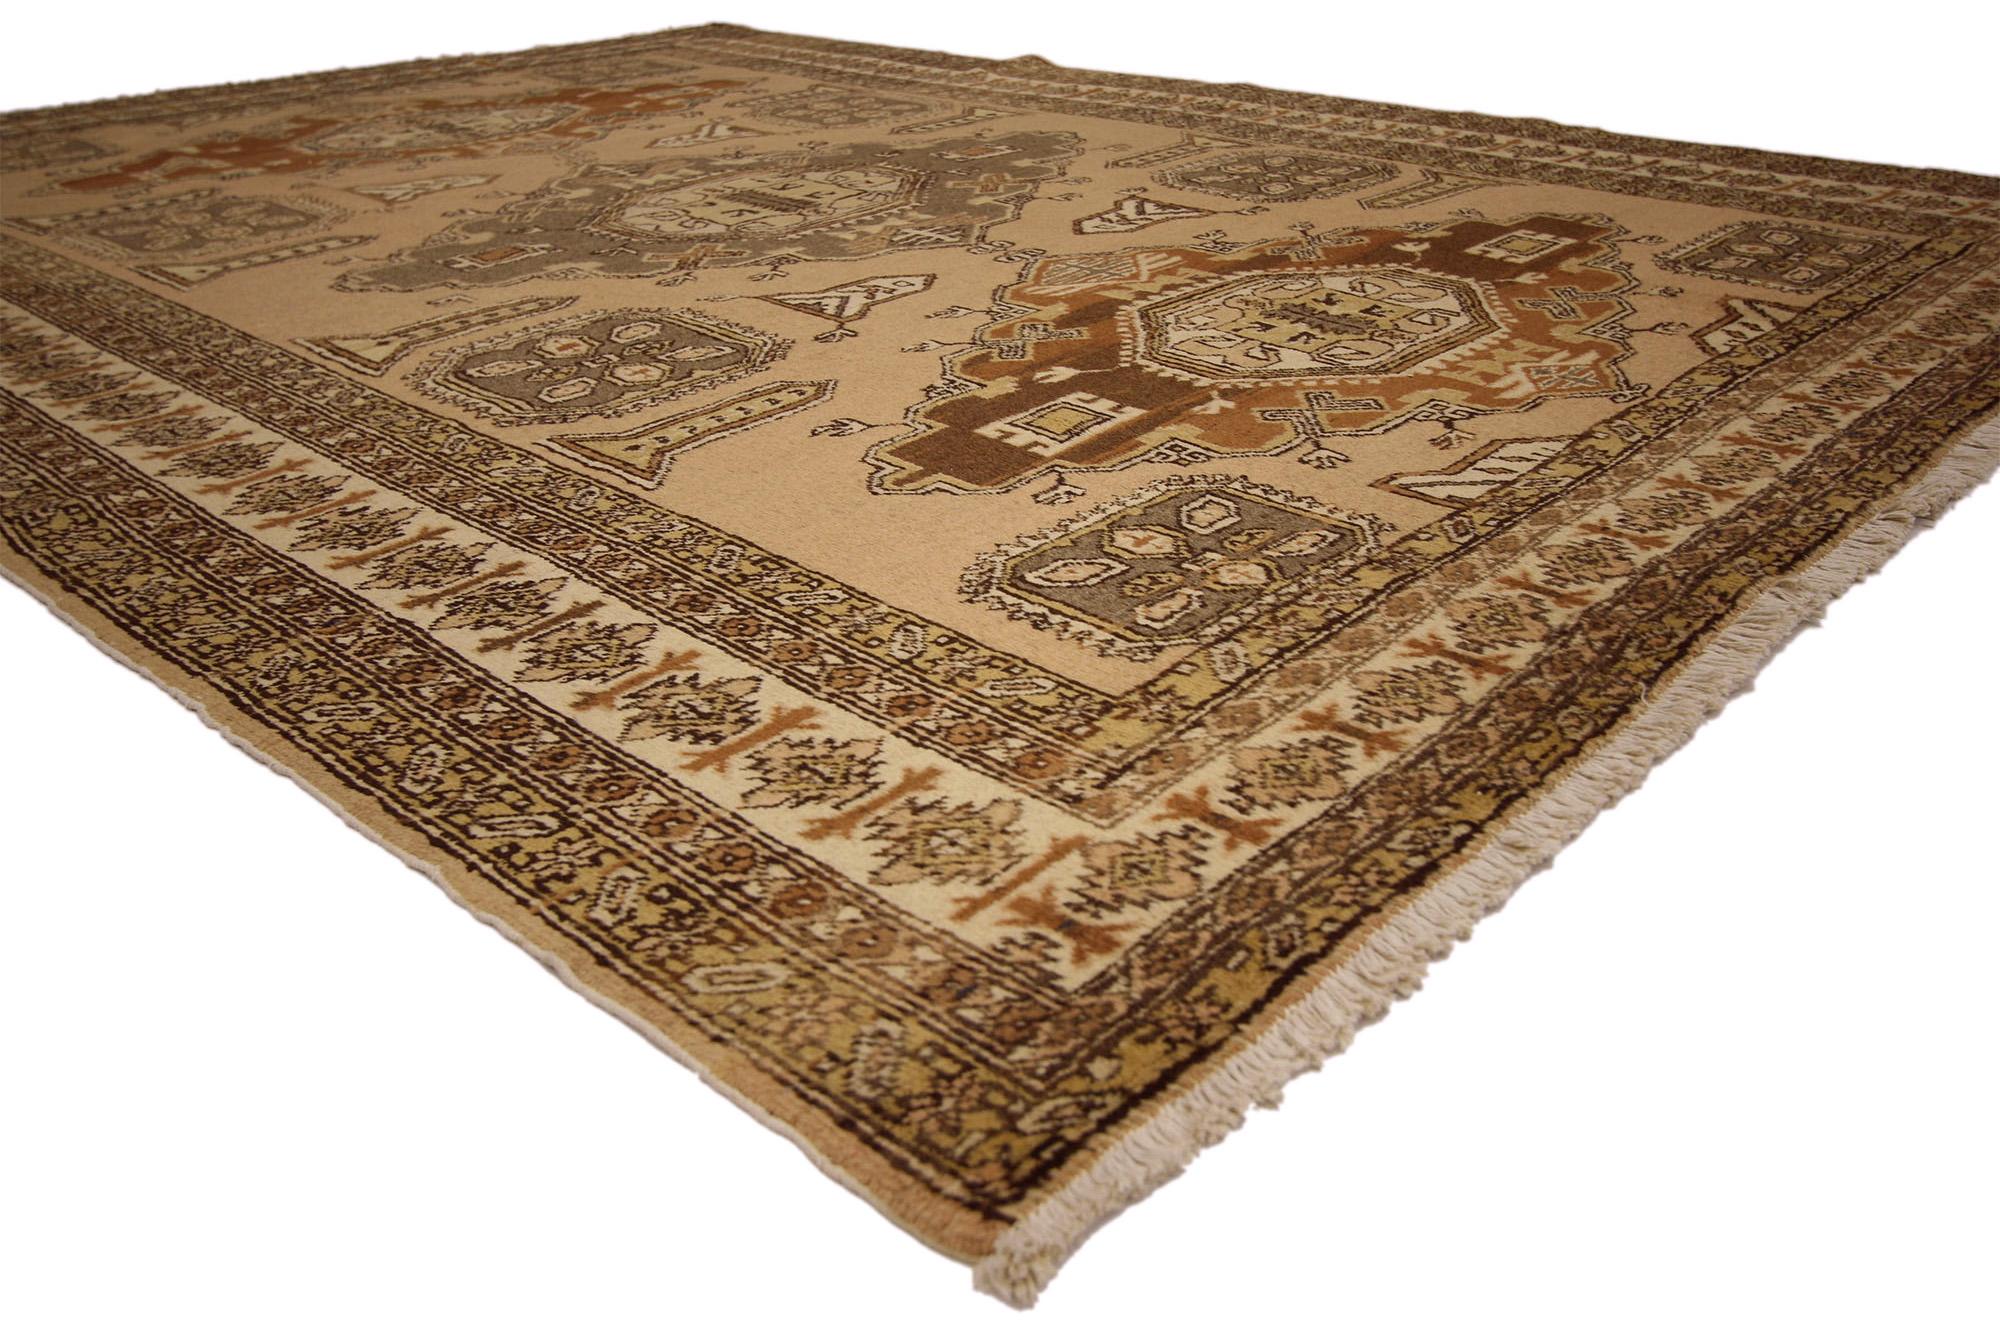 72037 Vintage Brown Persian Ardabil Rug, 07'00 x 10'00. Die antik gewaschenen persischen Ardabil-Teppiche, die aus der Stadt Ardabil im Iran stammen, sind moderne Teppiche, die einem speziellen Waschverfahren unterzogen wurden, um die Farben zu